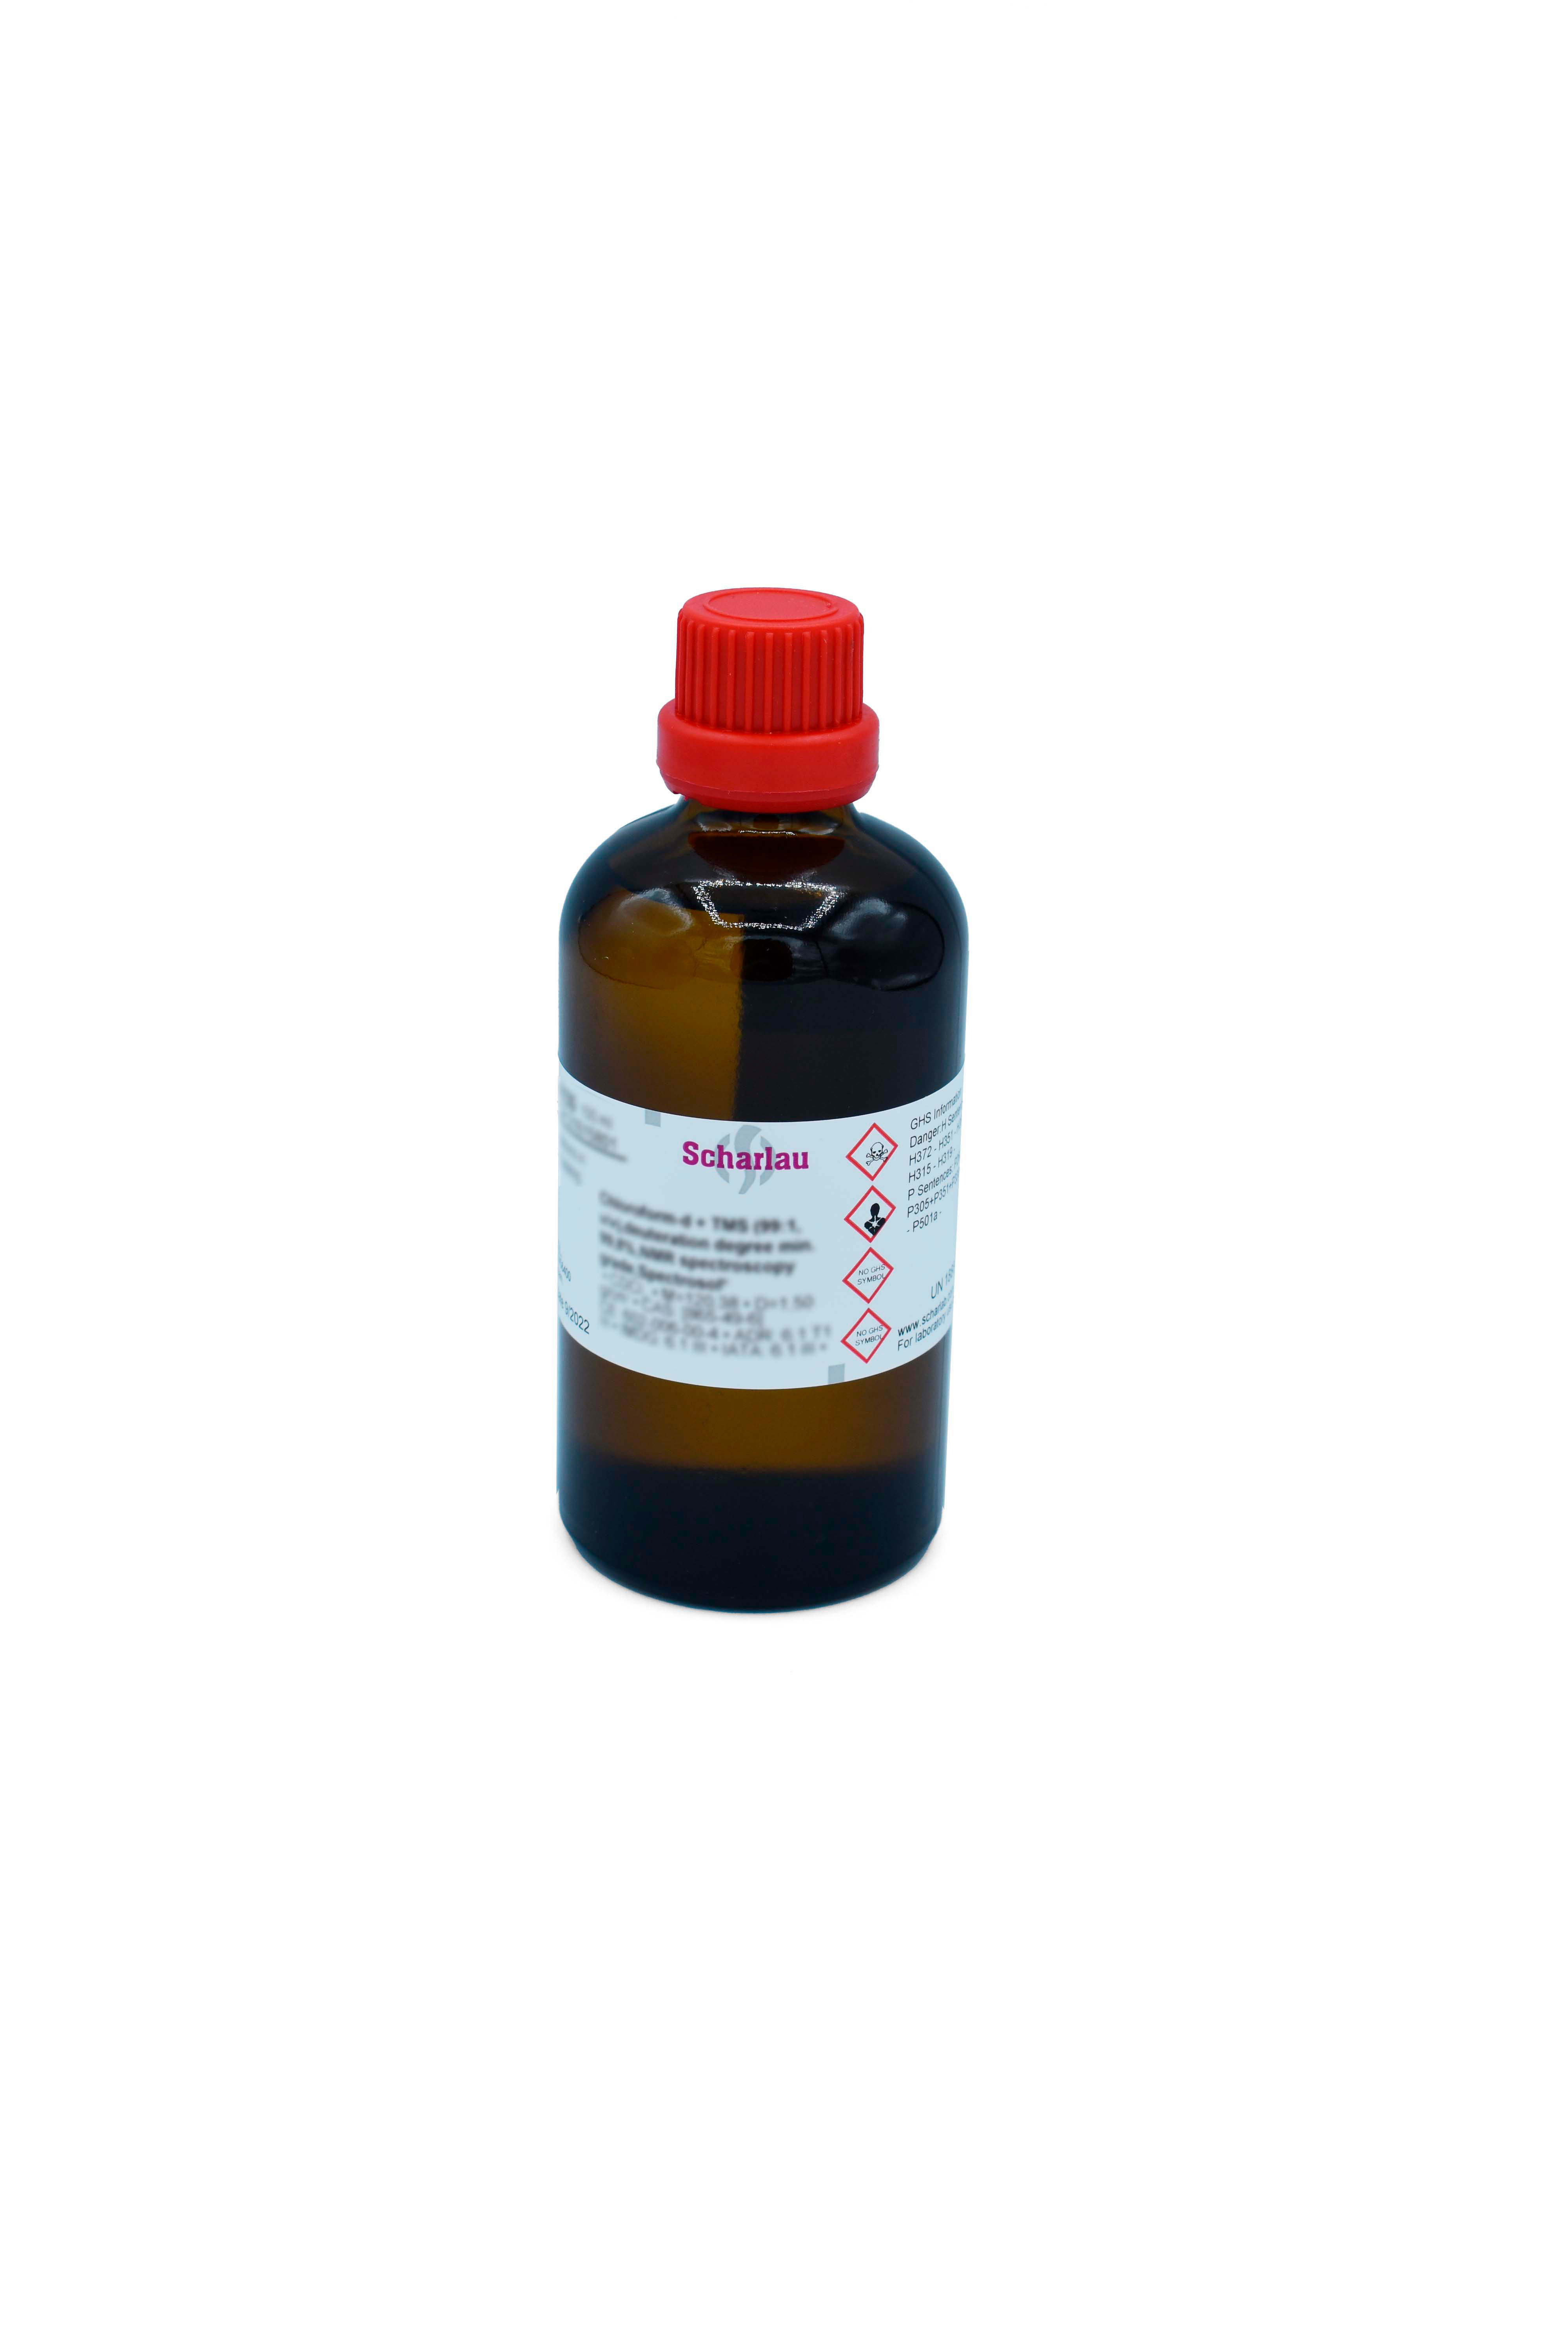 Diclorometano-d2, grado de deuteración mín. 99,5%, para espectroscopía RMN, Spectrosol®, Metileno cloruro-d2, Dideuterodiclorometano